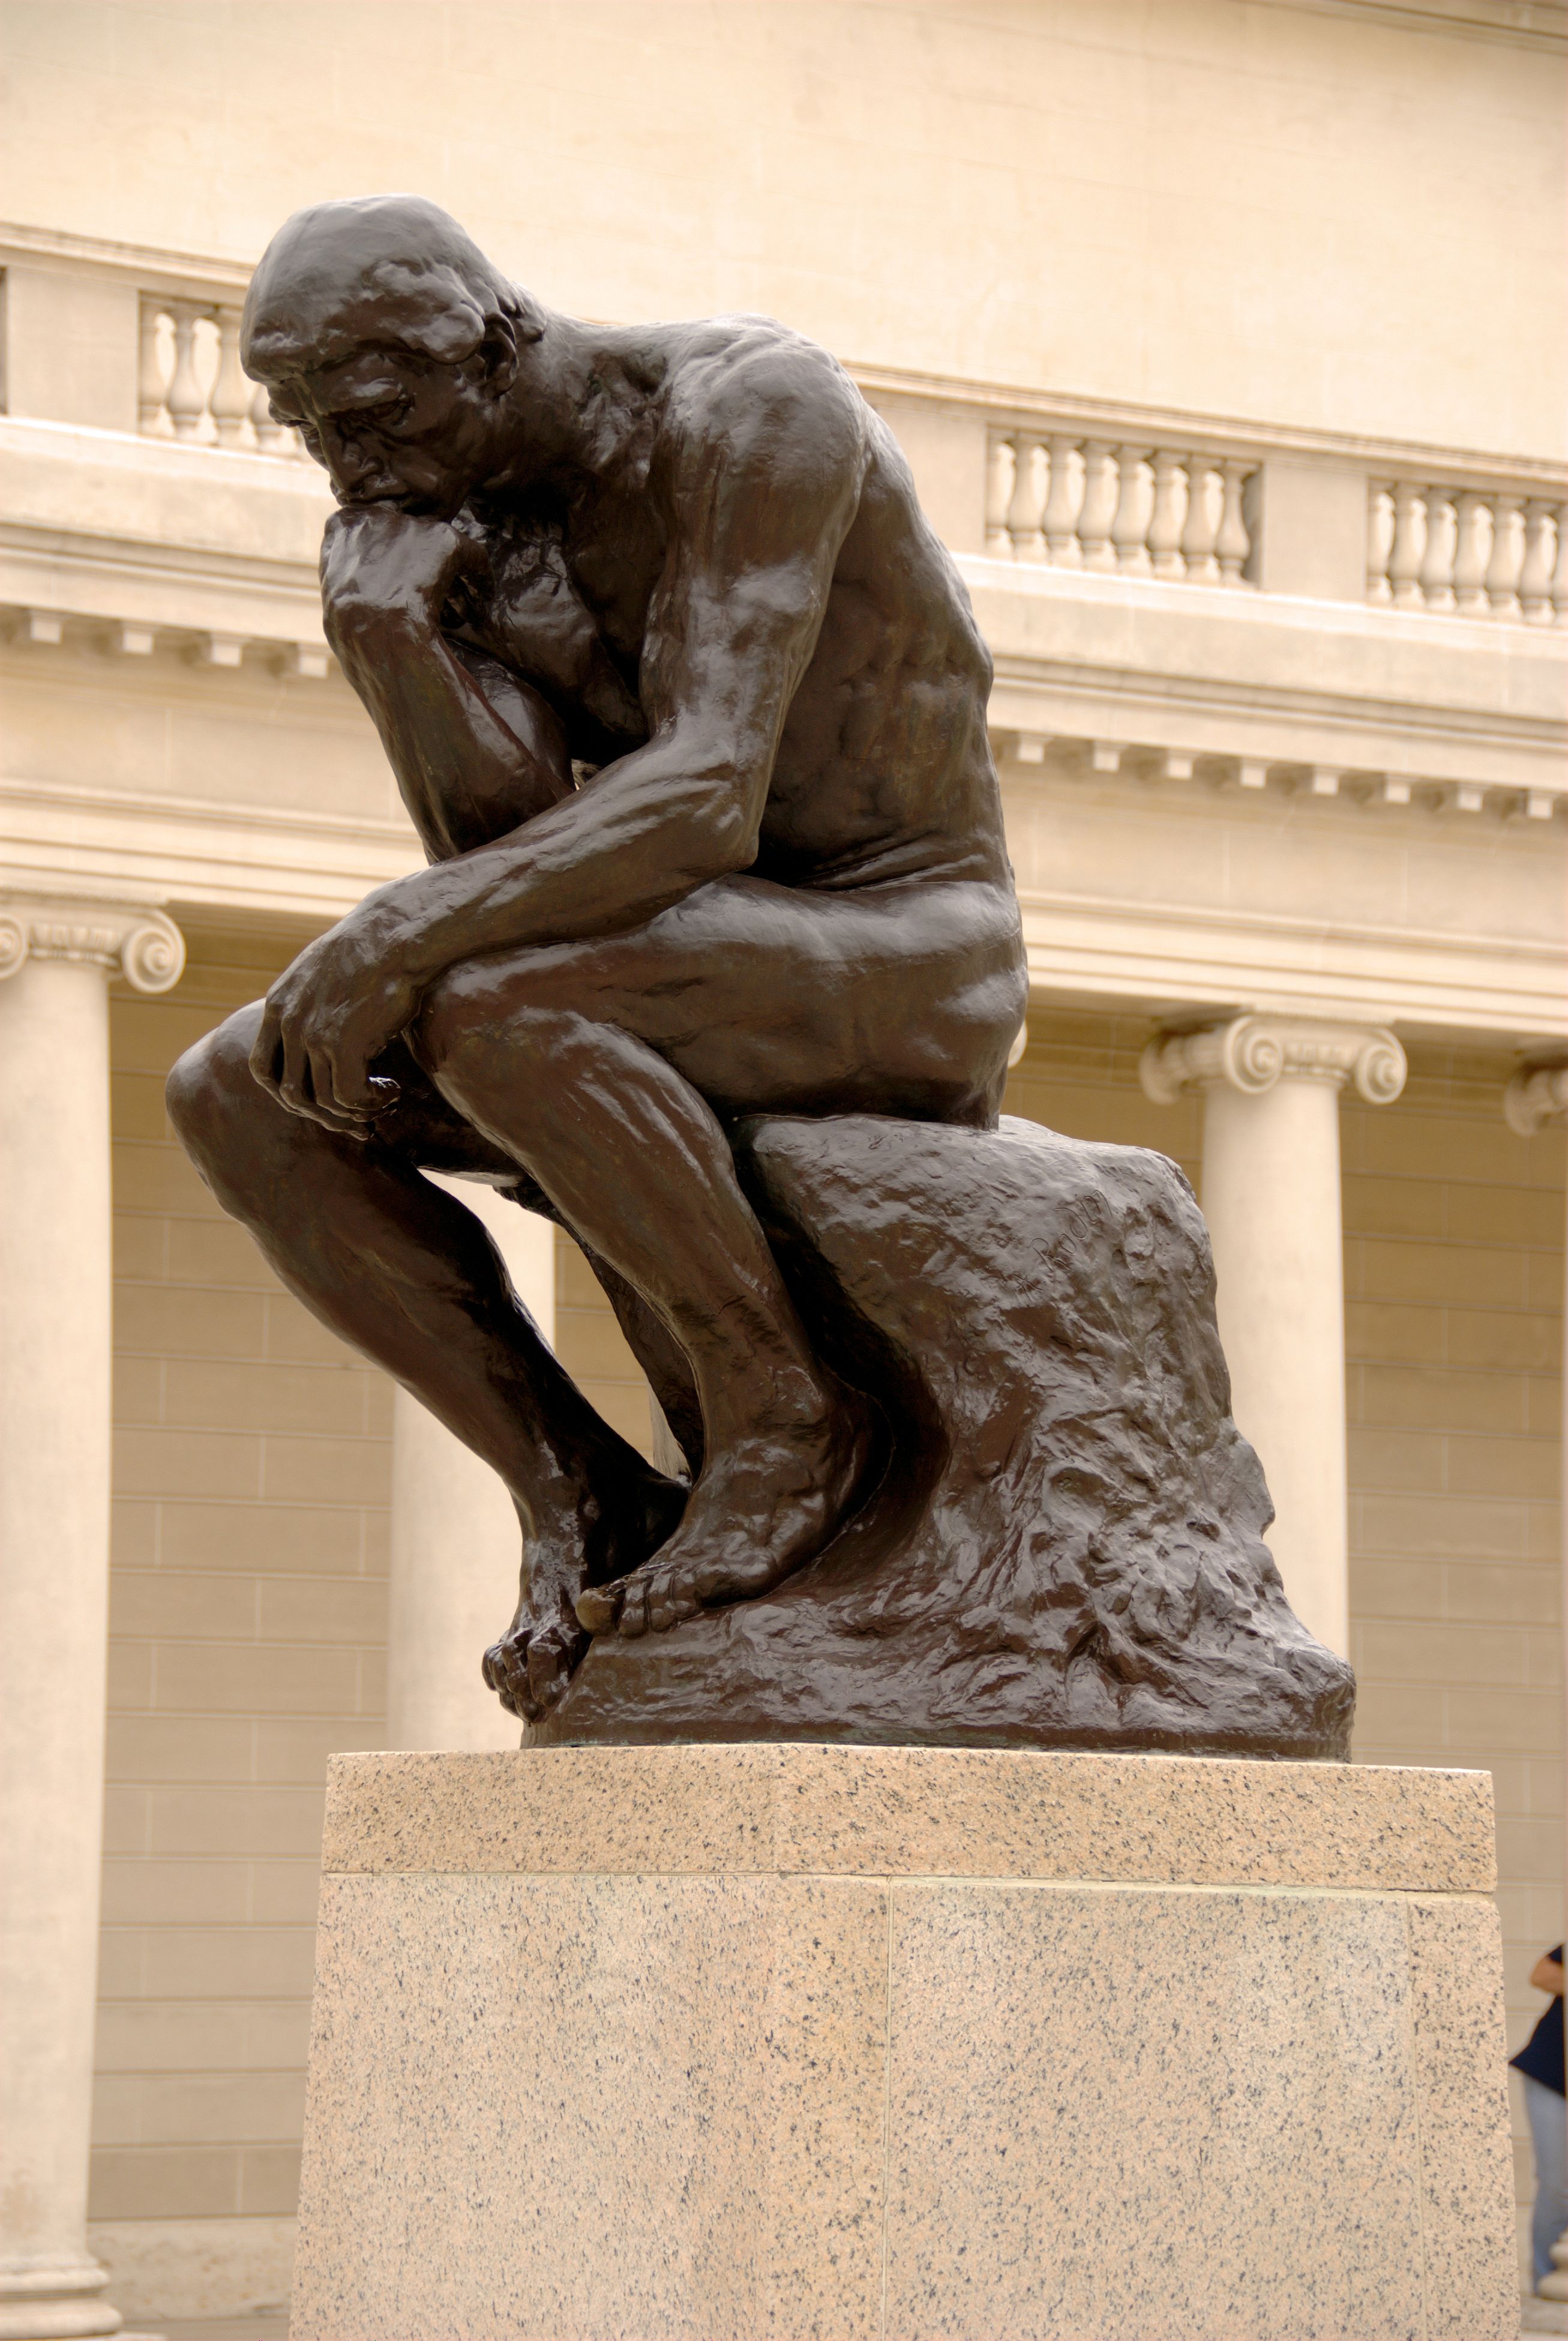 Der Denker by Auguste Rodin - 1880 - 6 ft. 6 in Legion of Honor